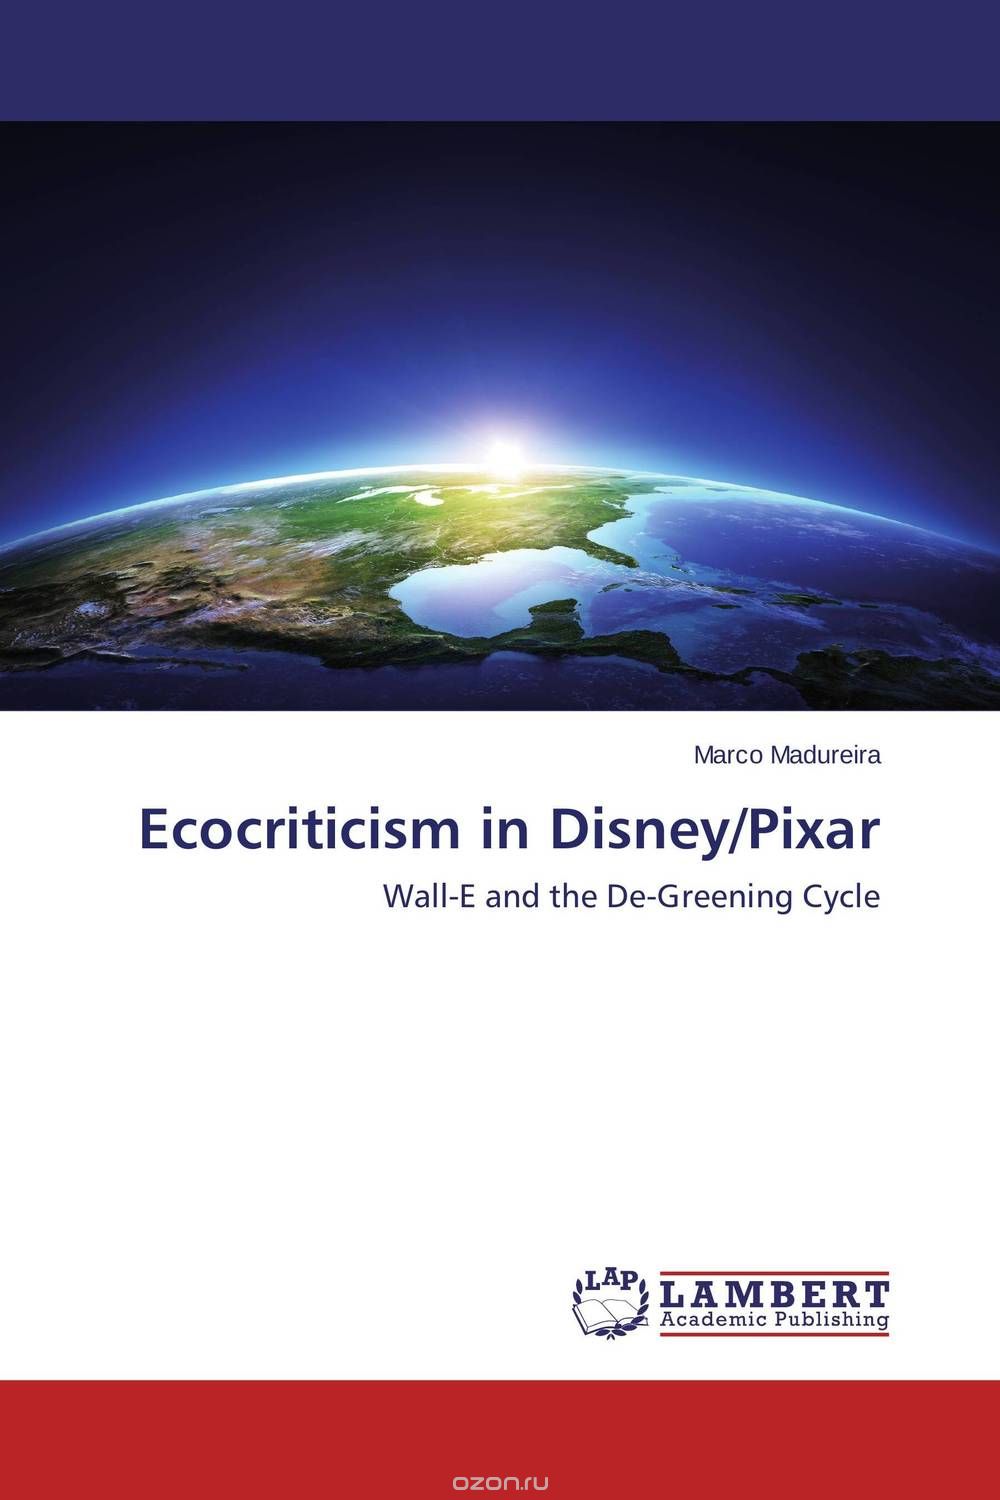 Скачать книгу "Ecocriticism in Disney/Pixar"